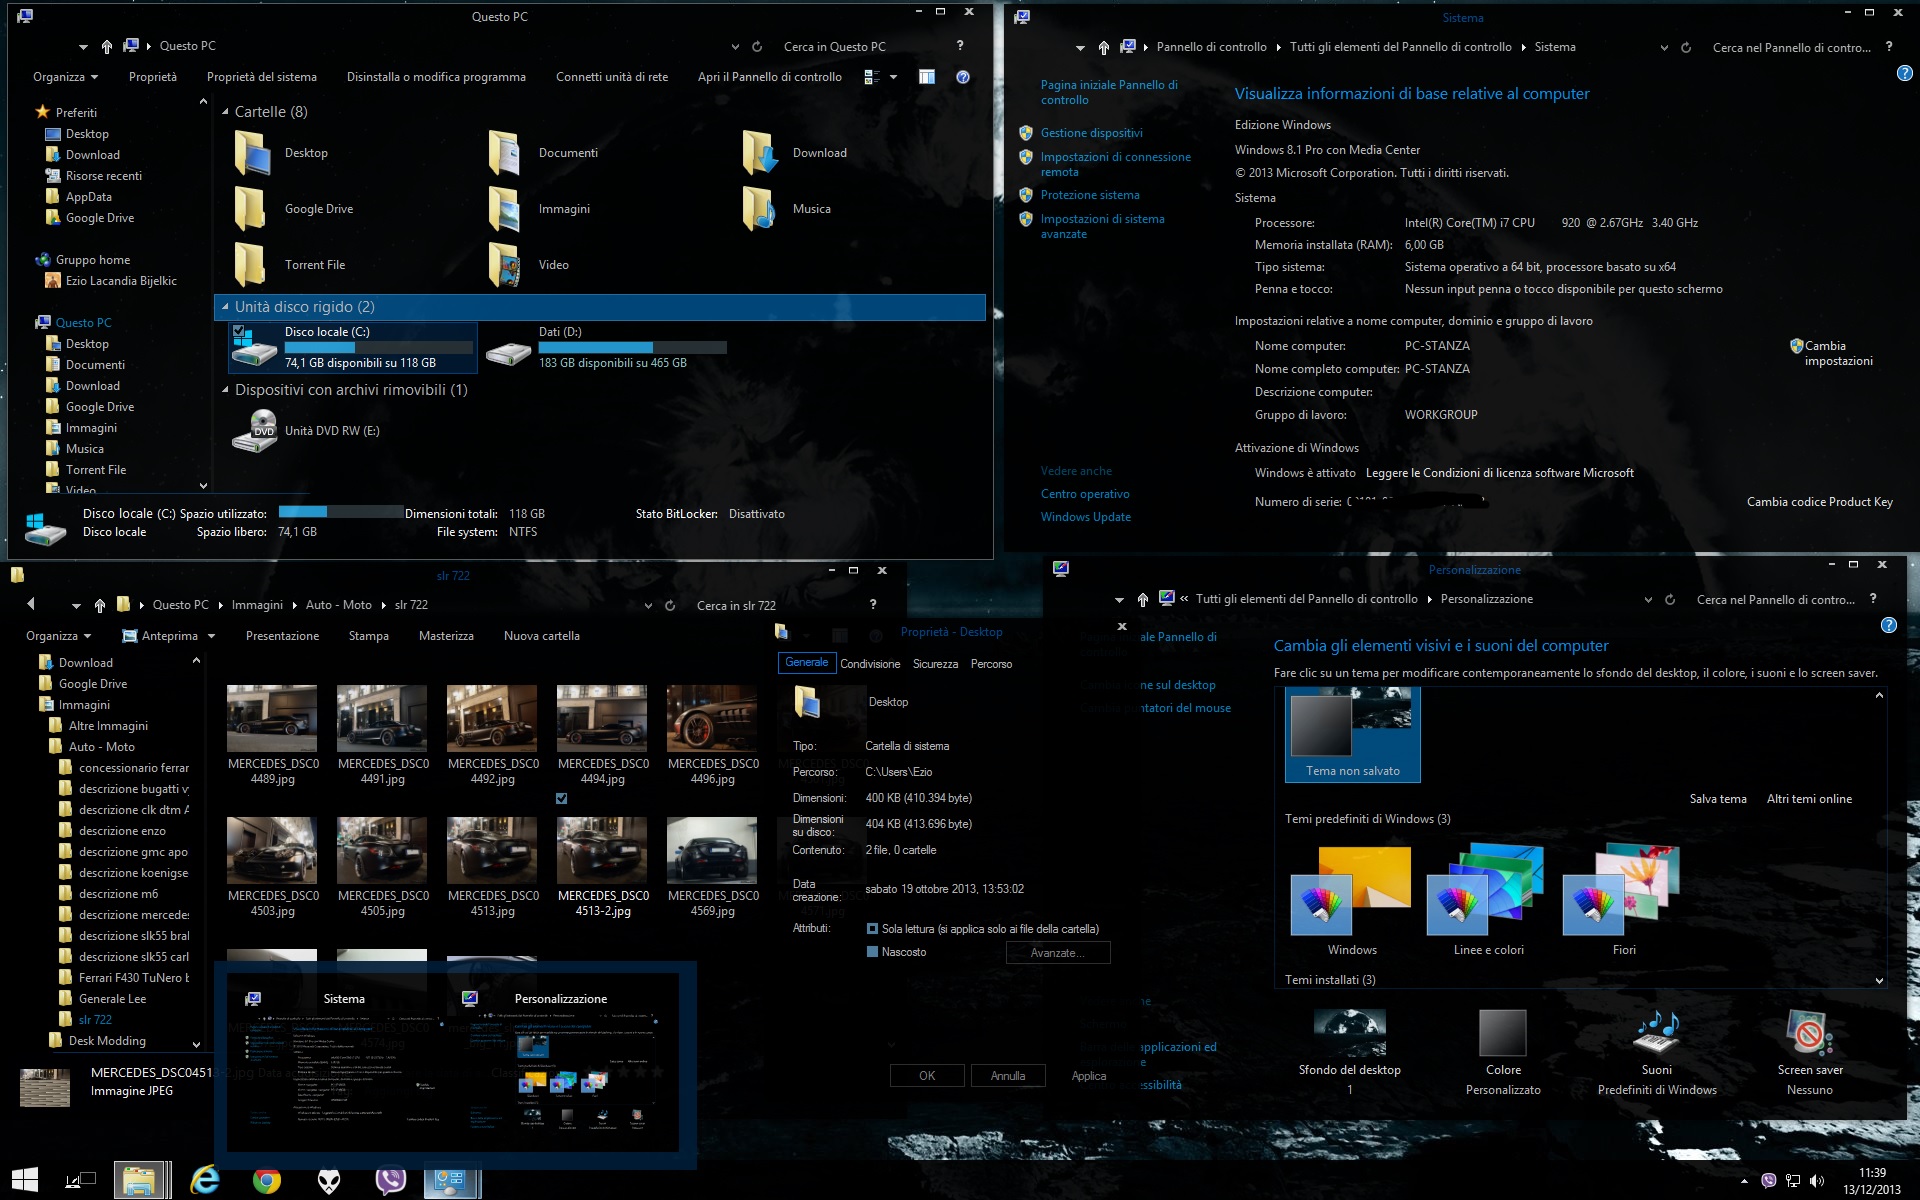 abisso_2014__dark_theme_windows_8_1_update1__upd11_by_ezio-d6x6s5i.jpg